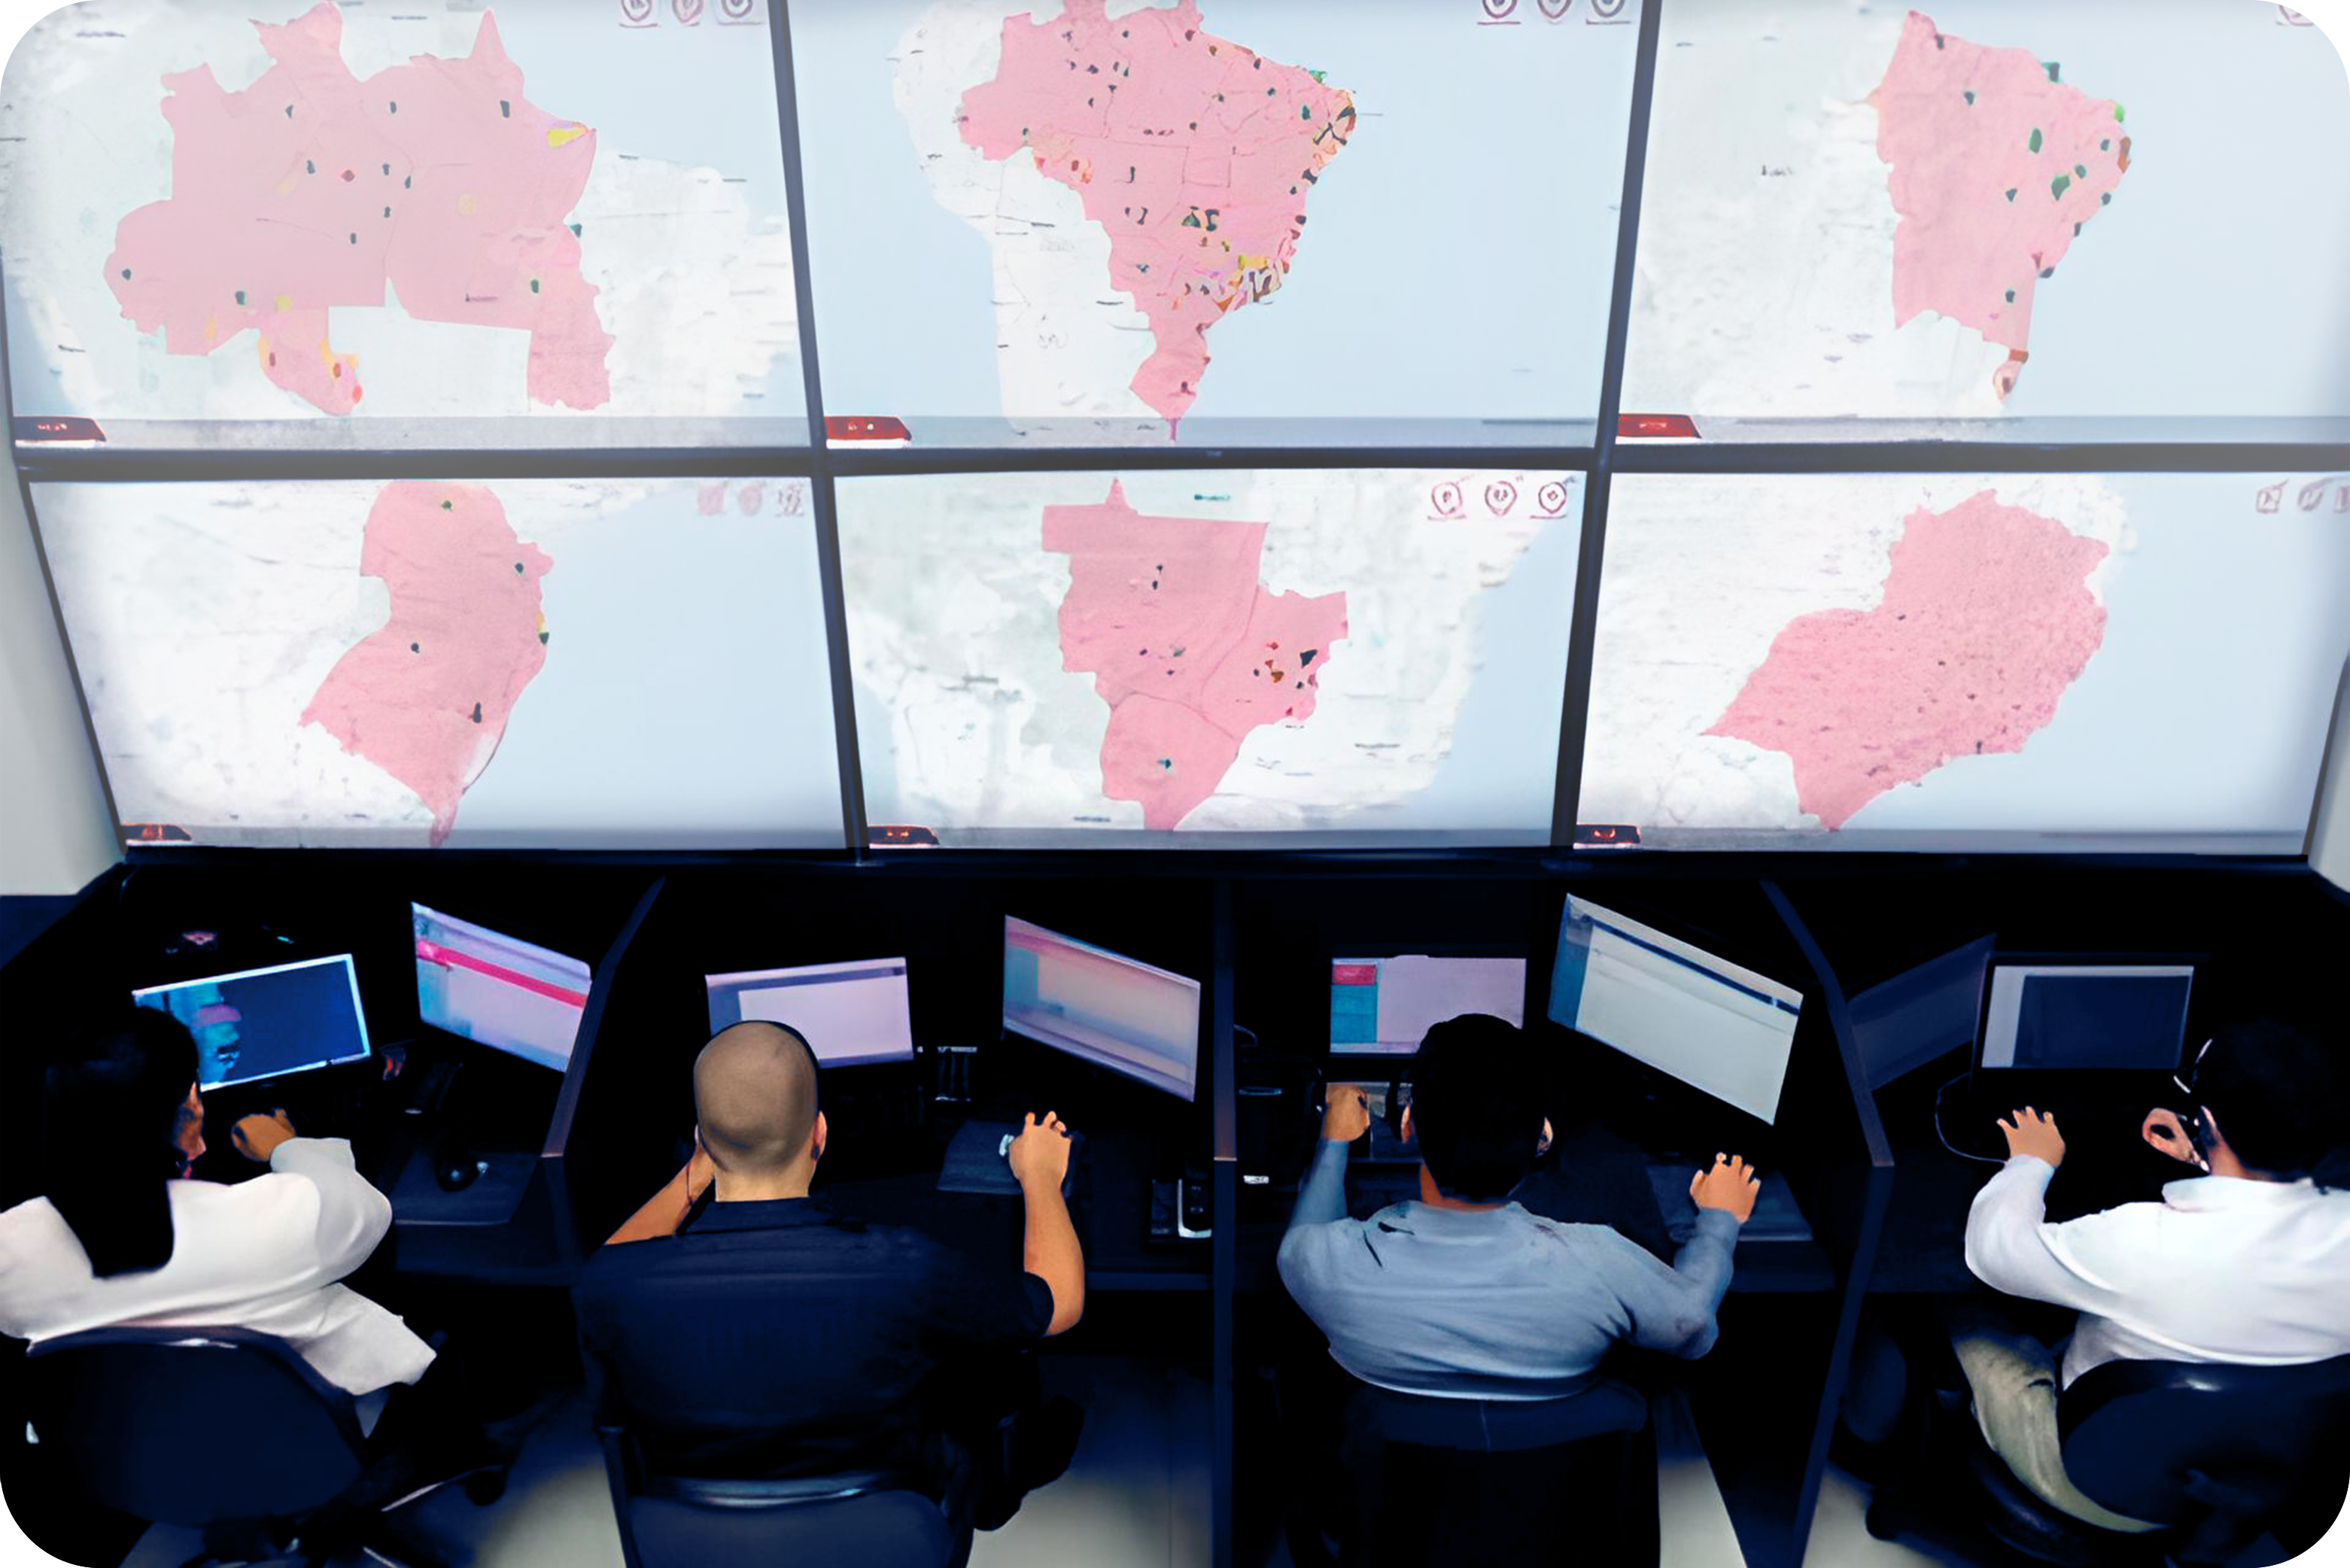 Central de monitoramento de cibersegurança da 2Com Consulting, com 4 pessoas e 13 telas, sendo 6 mostrando as regiões do Brasil e mais 7 que são das máquinas usadas pelo operadores